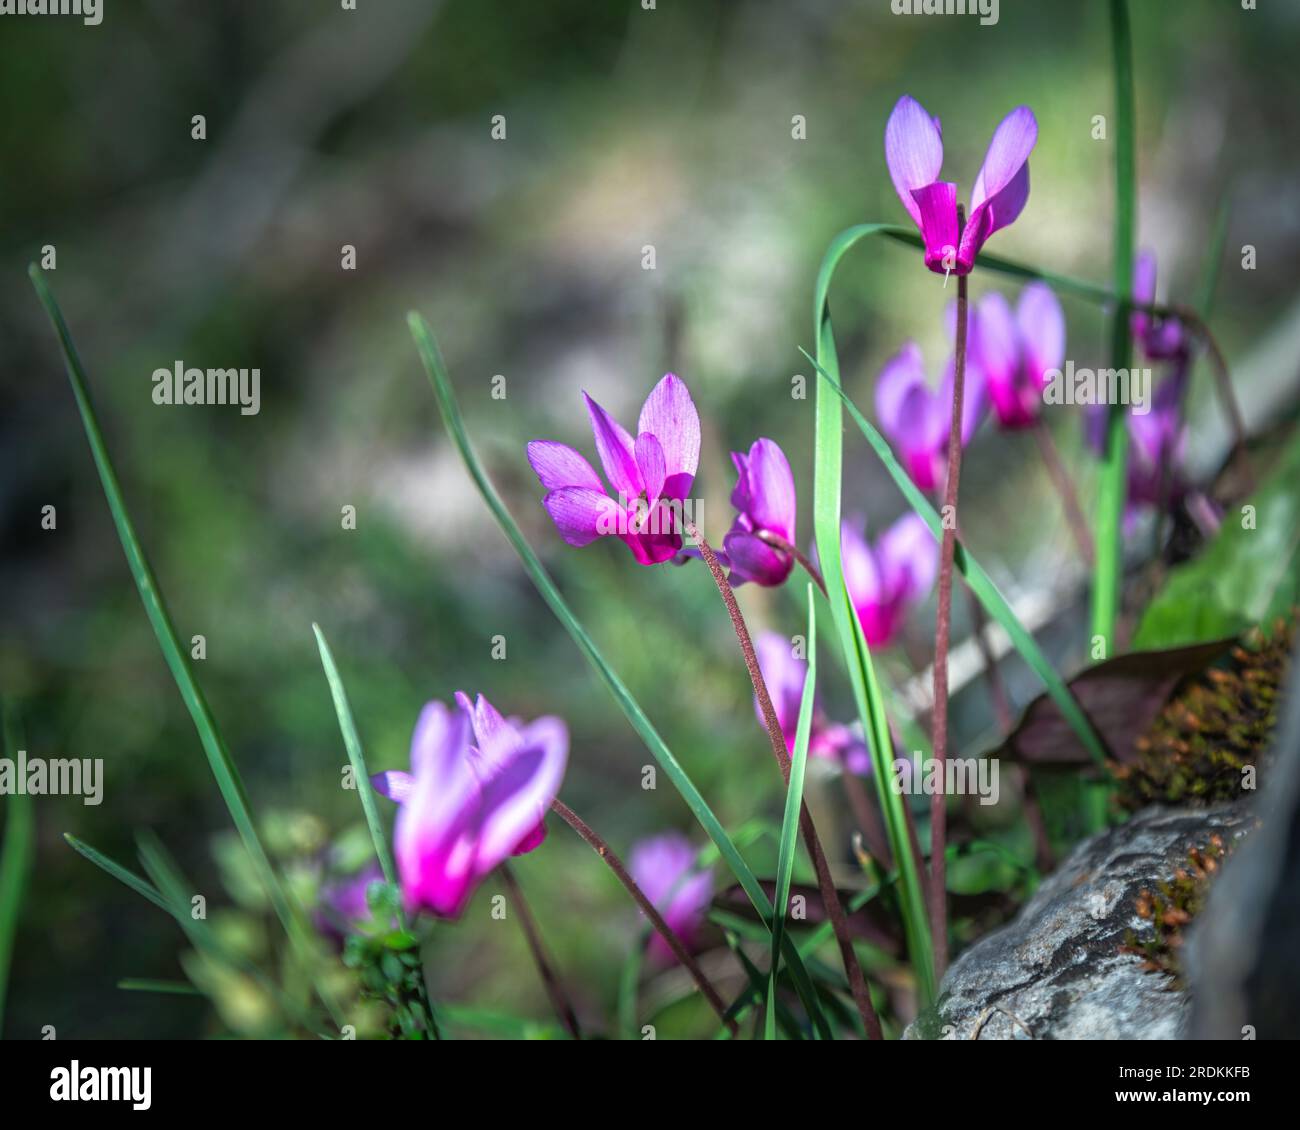 Floraison de Cyclamen de printemps, Cyclamen repandum de la famille des Primulaceae. Abruzzes, Italie, Europe Banque D'Images